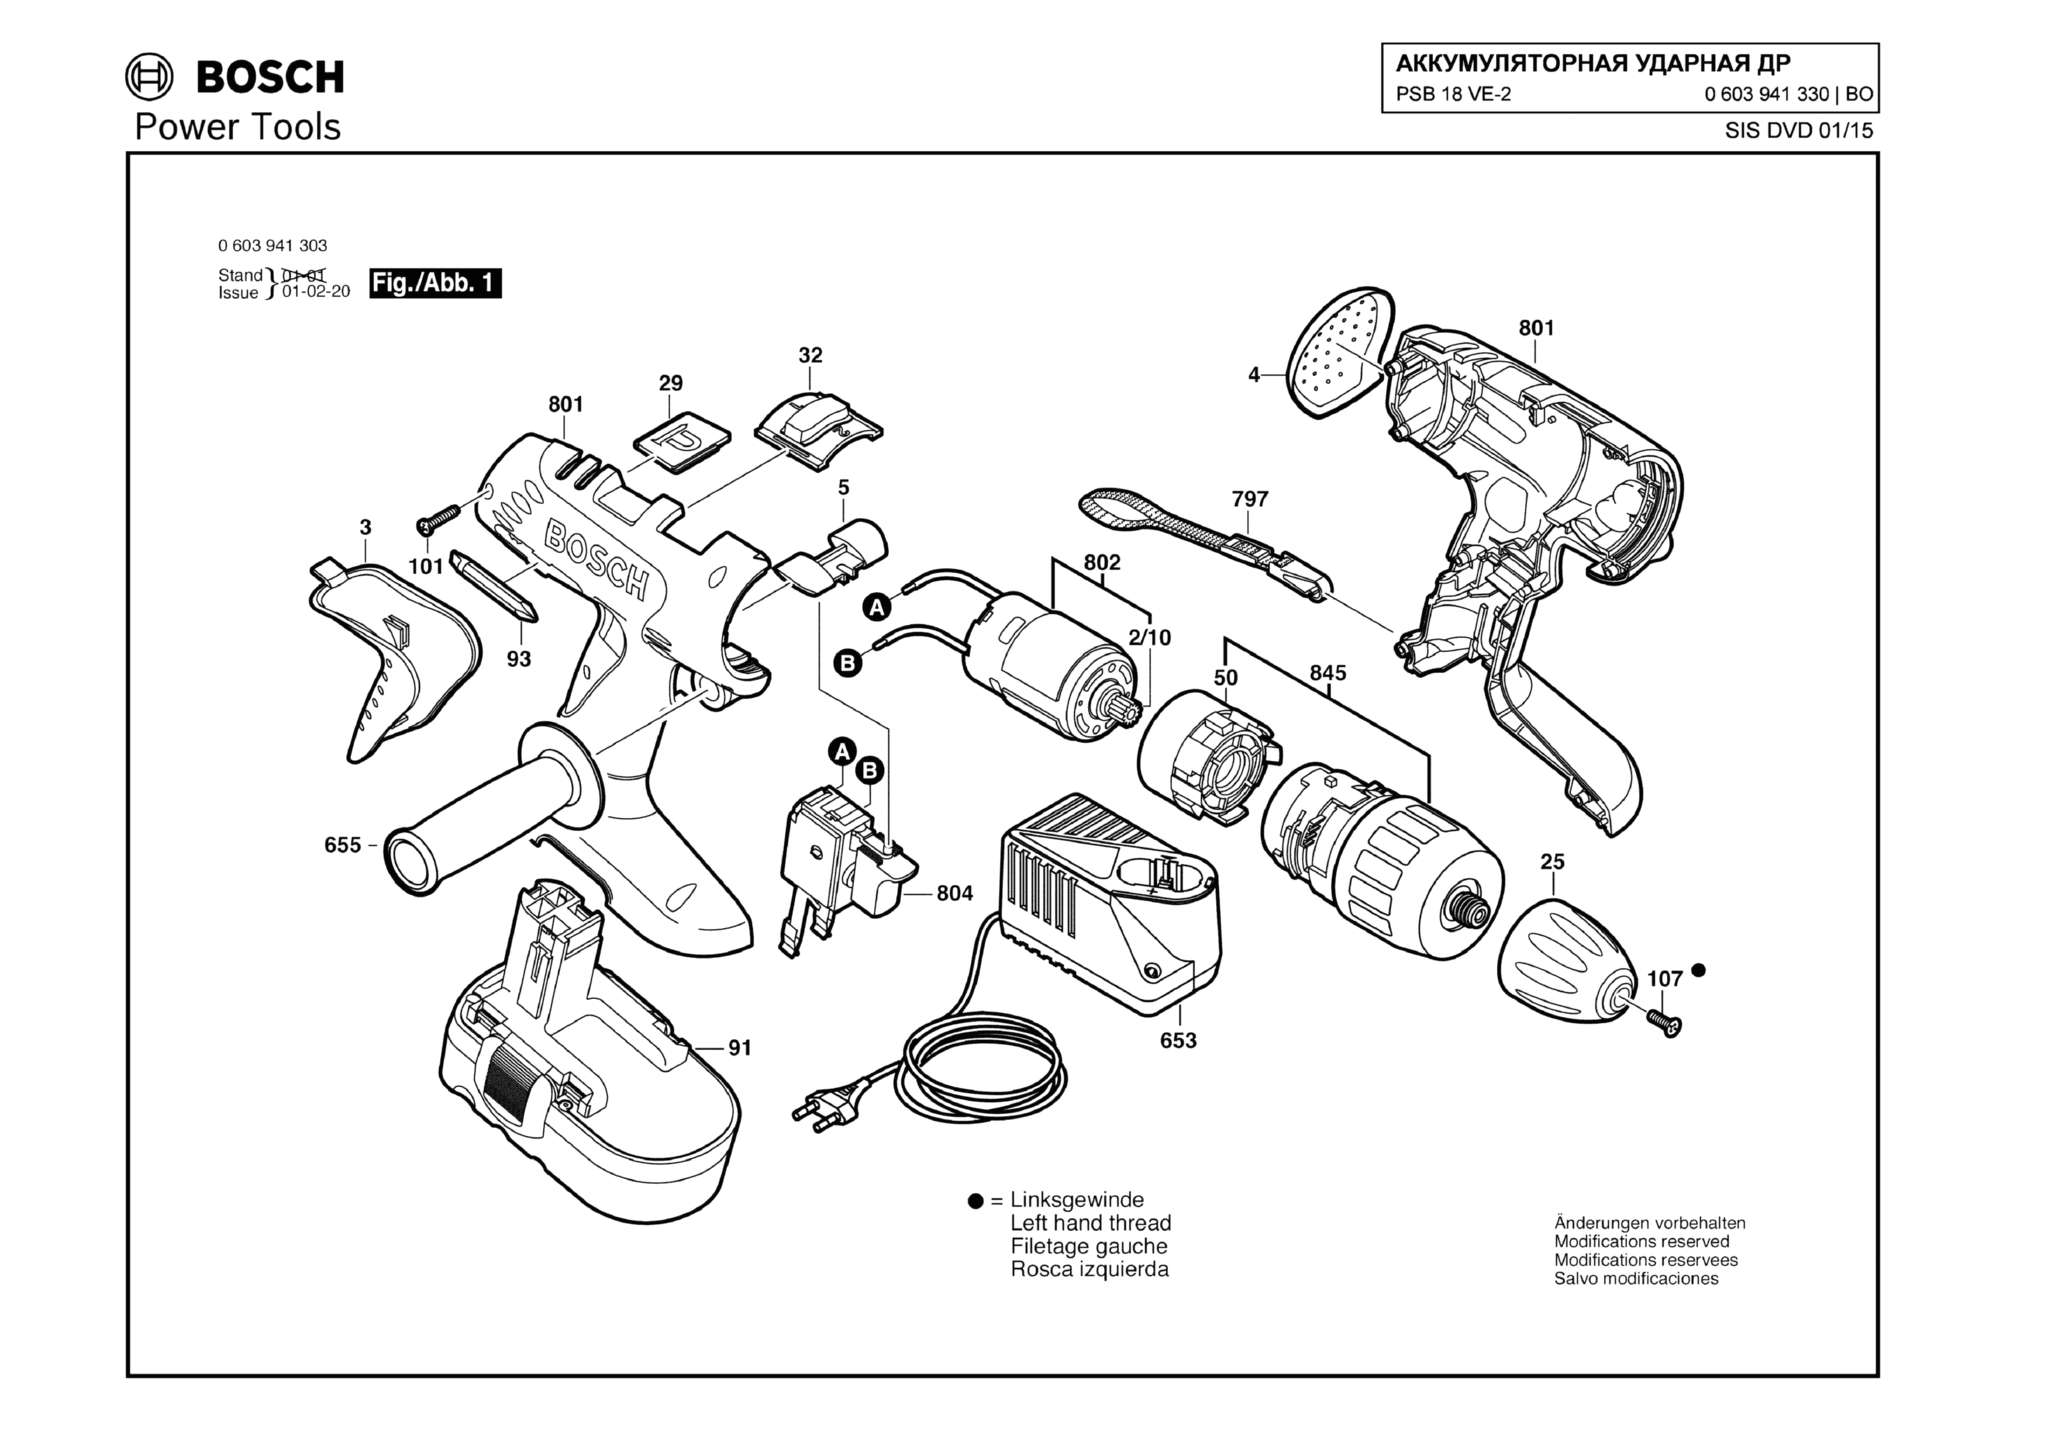 Запчасти, схема и деталировка Bosch PSB 18 VE-2 (ТИП 0603941330)